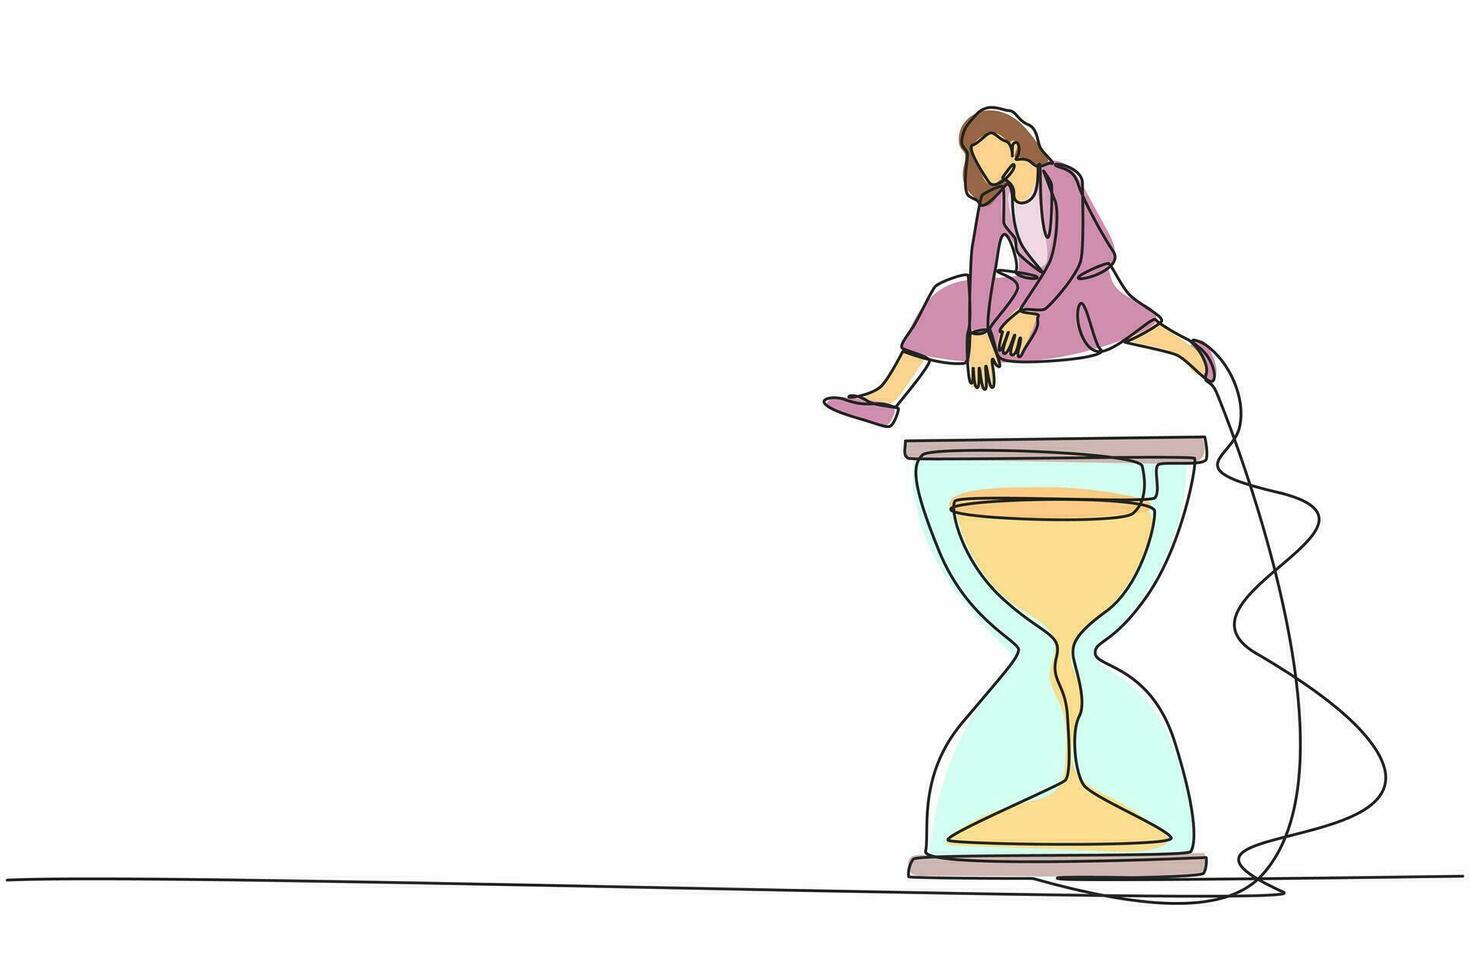 una mujer de negocios de dibujo de una línea continua salta o pasa el reloj de arena. concepto de programación de negocios y gestión del tiempo. plazo o eficiencia del tiempo de trabajo. ilustración de vector de diseño de línea única